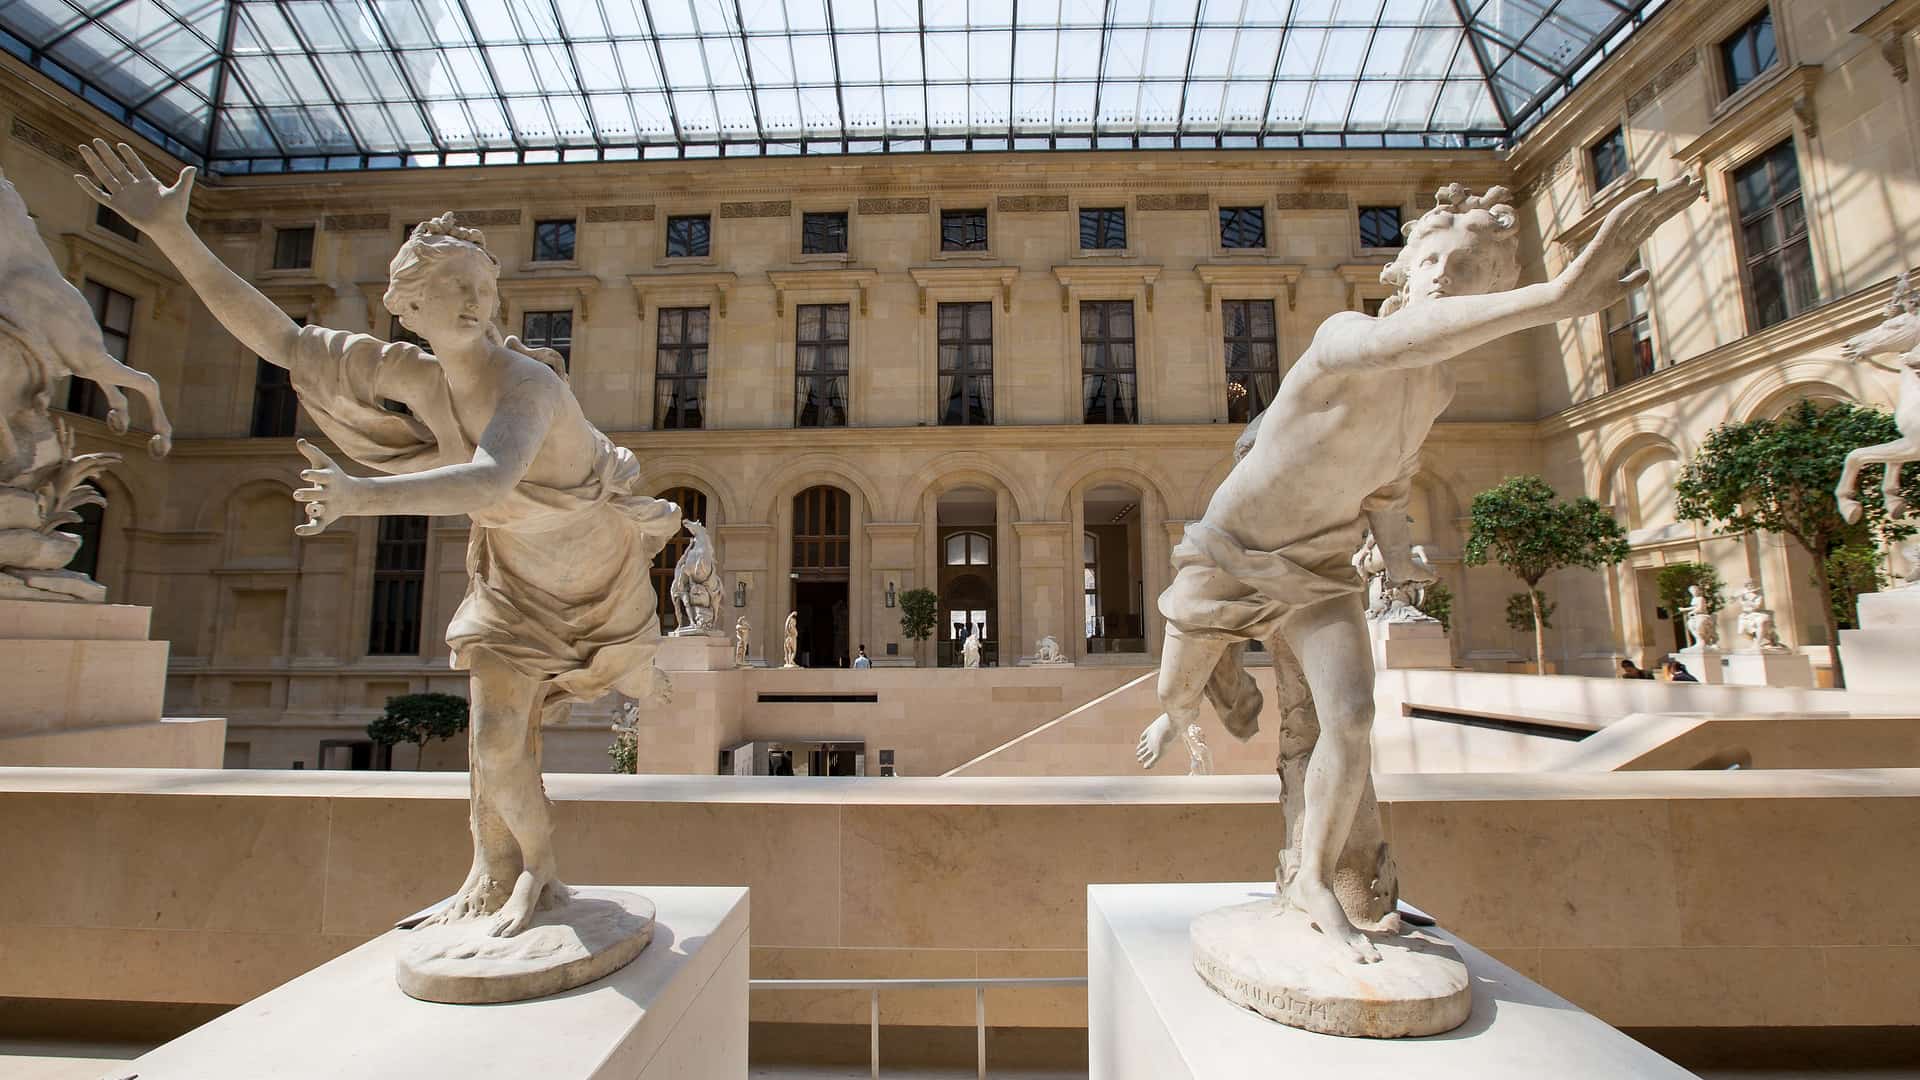 Museum Paris